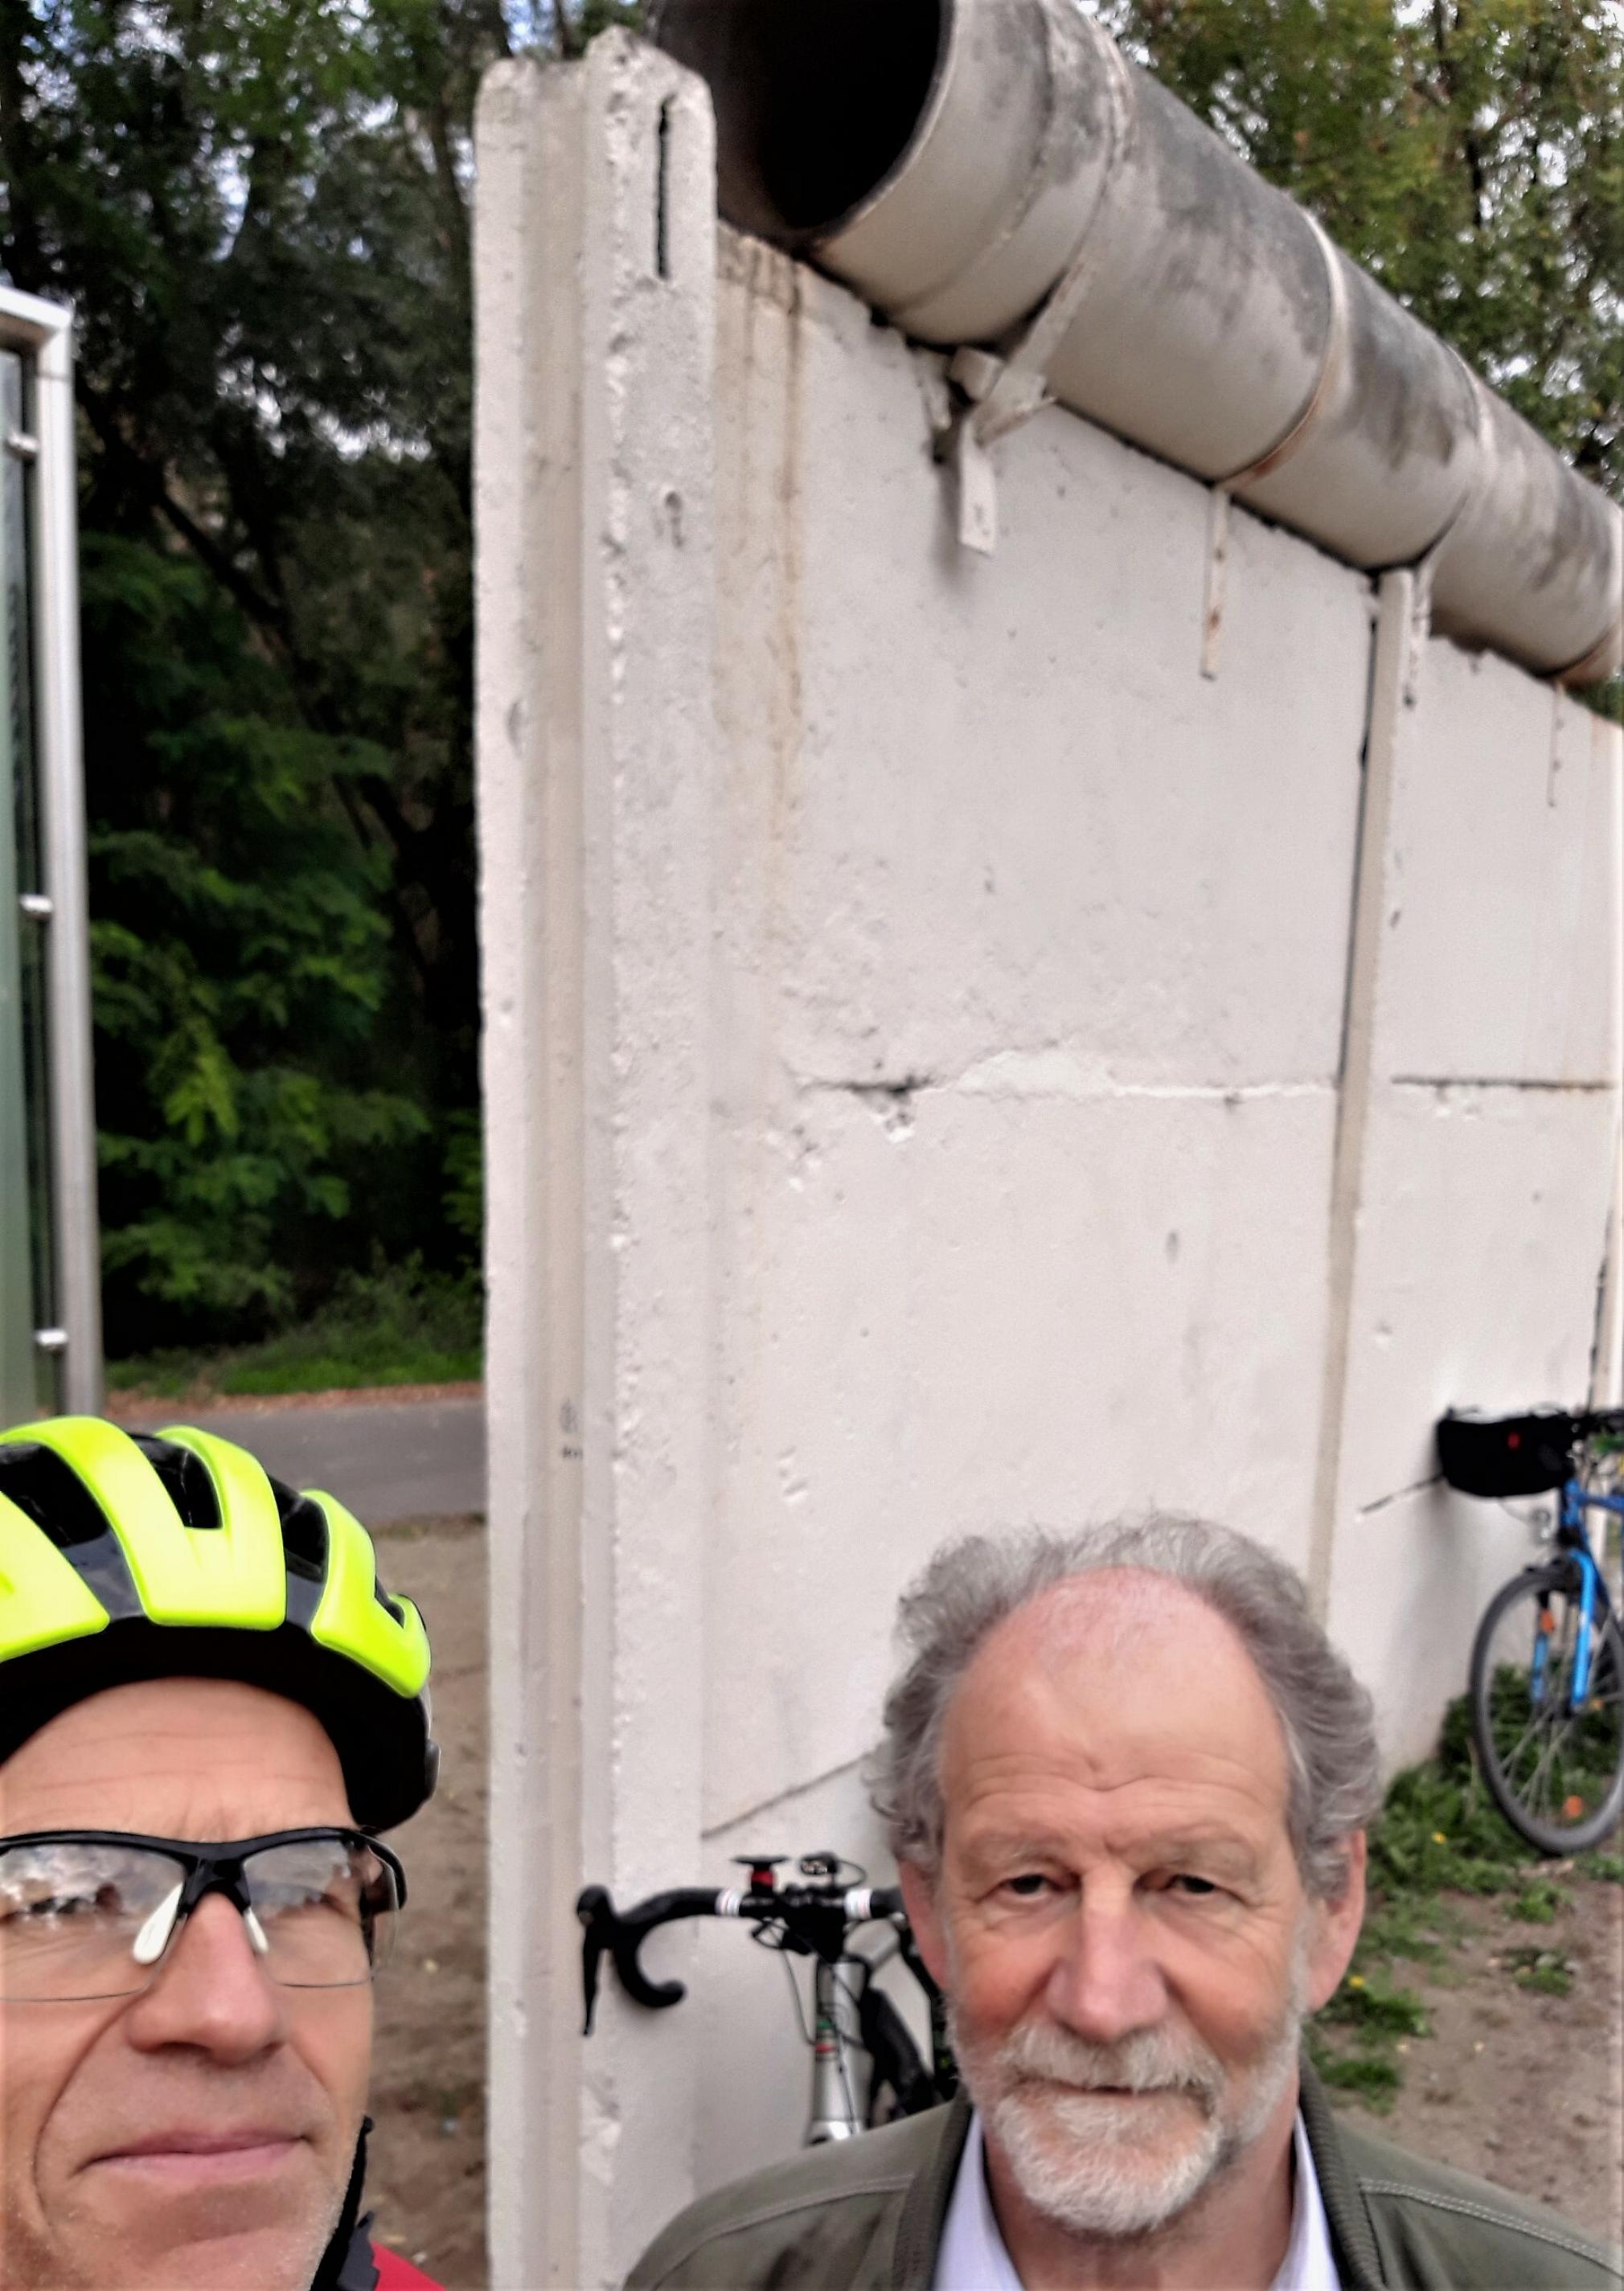 Roos und Cramer (rechts) im Selfie, im Hintergrund ist der original Mauerrest mit den daran gelehnten Fahrrädern der beiden Interviewpartner zu sehen.